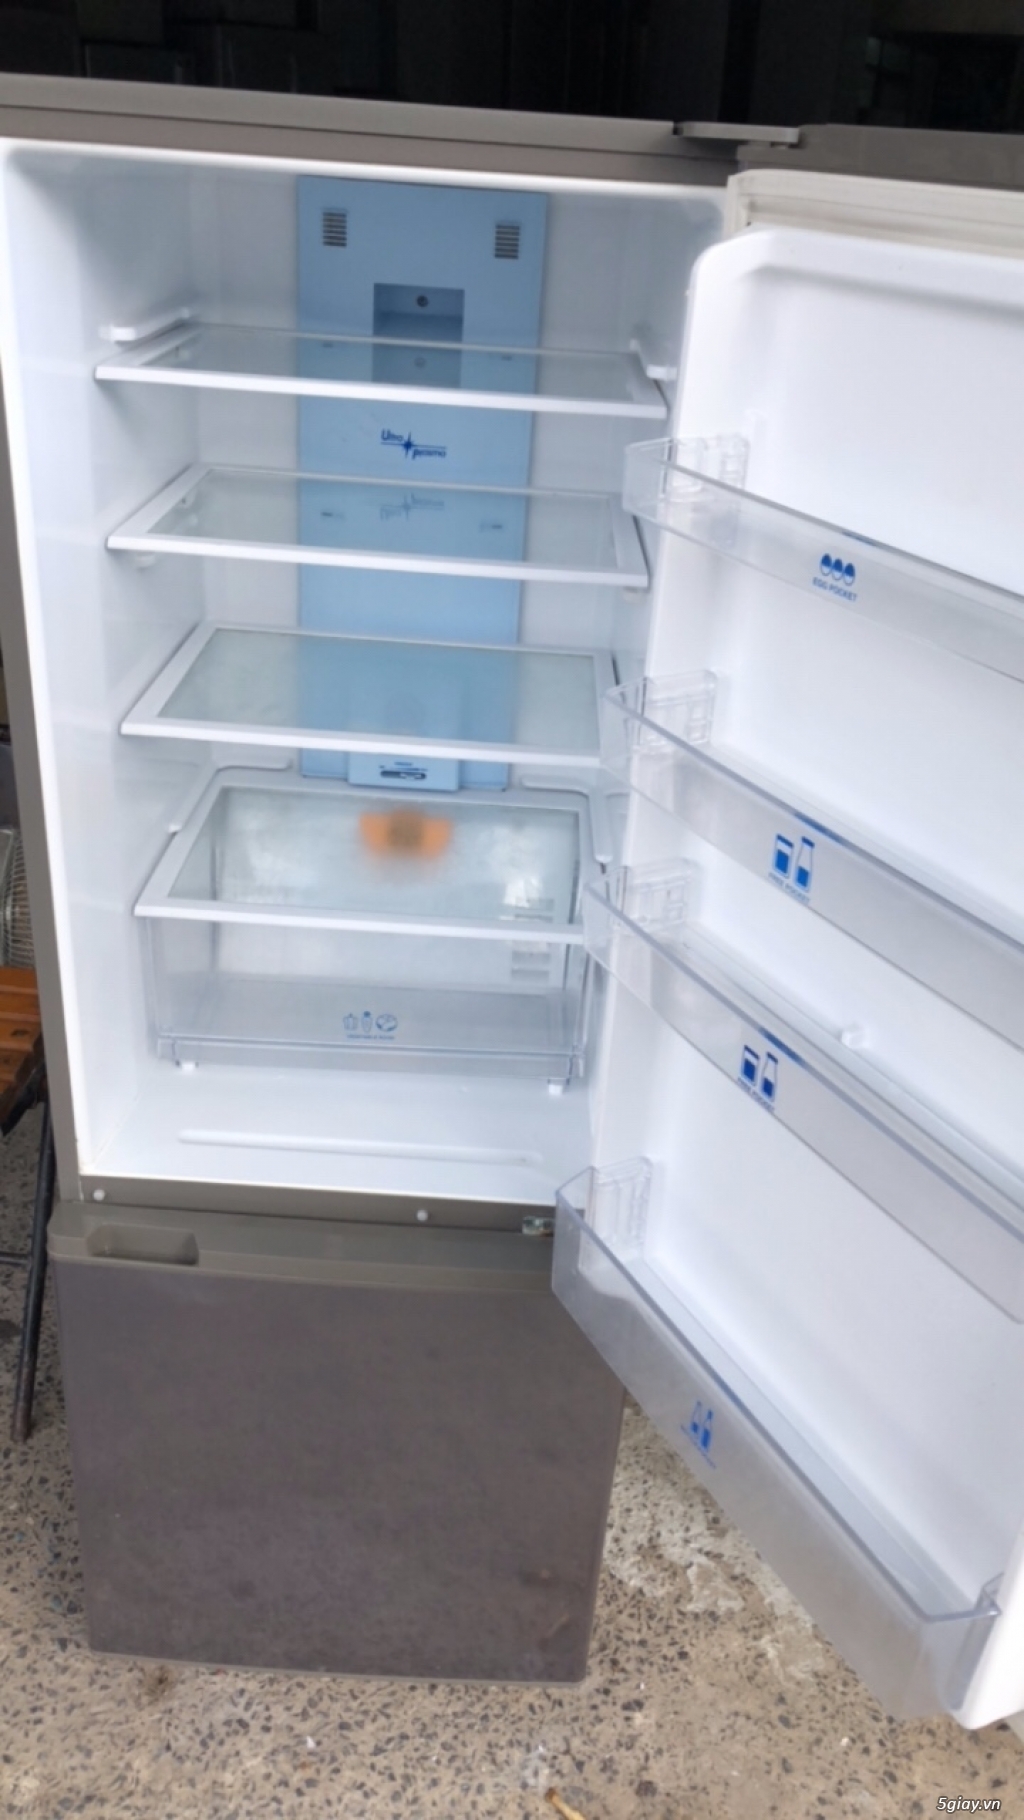 Thanh lý tủ lạnh cũ Aqua 244l, mới 94%, bao test - 2